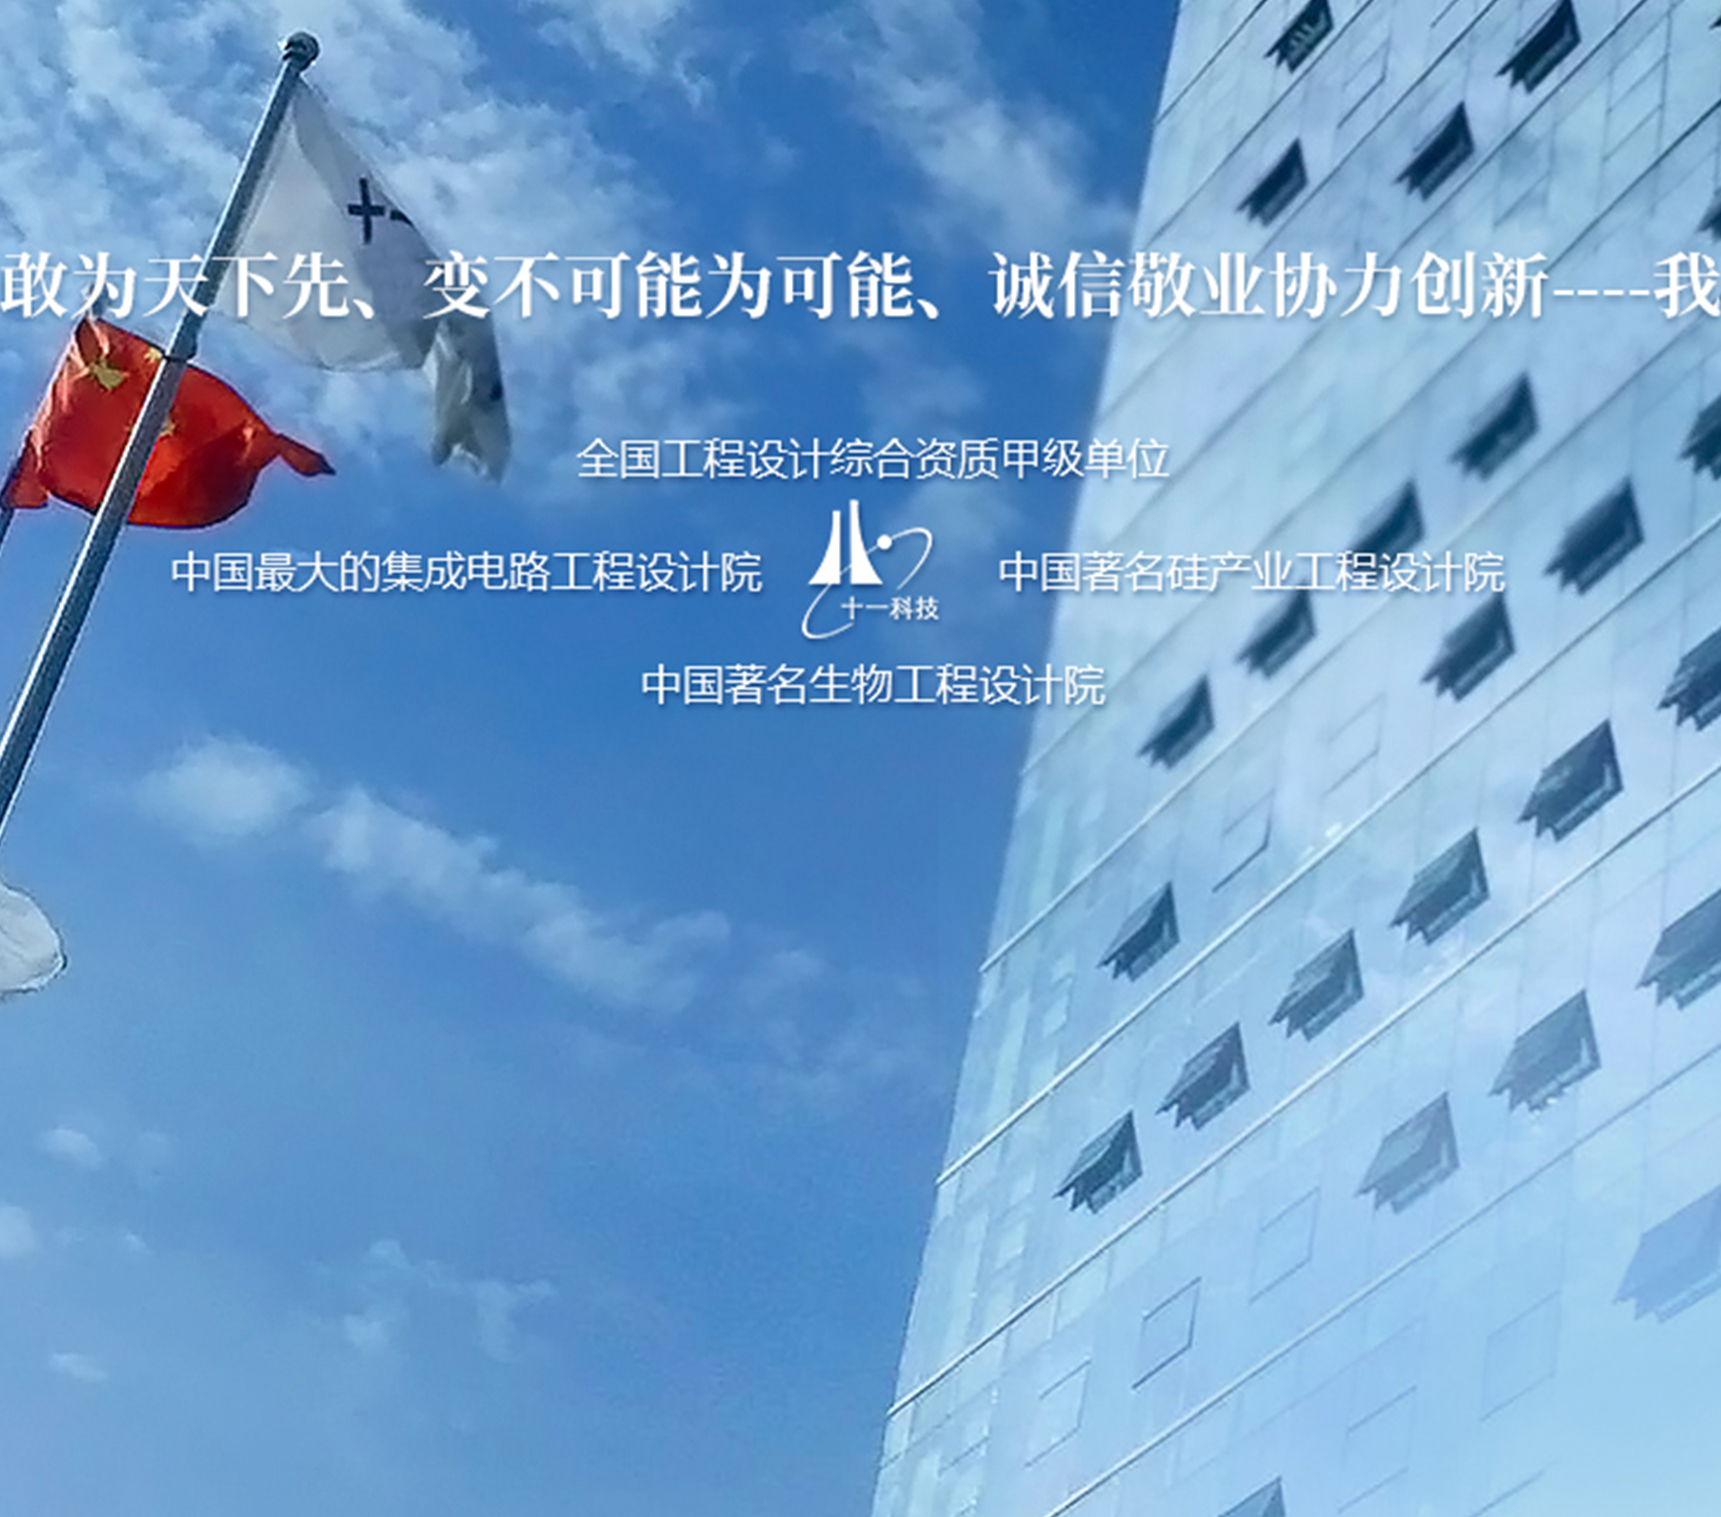 信息产业电子第十一设计研究院科技工程股份有限公司南京分公司-图片4